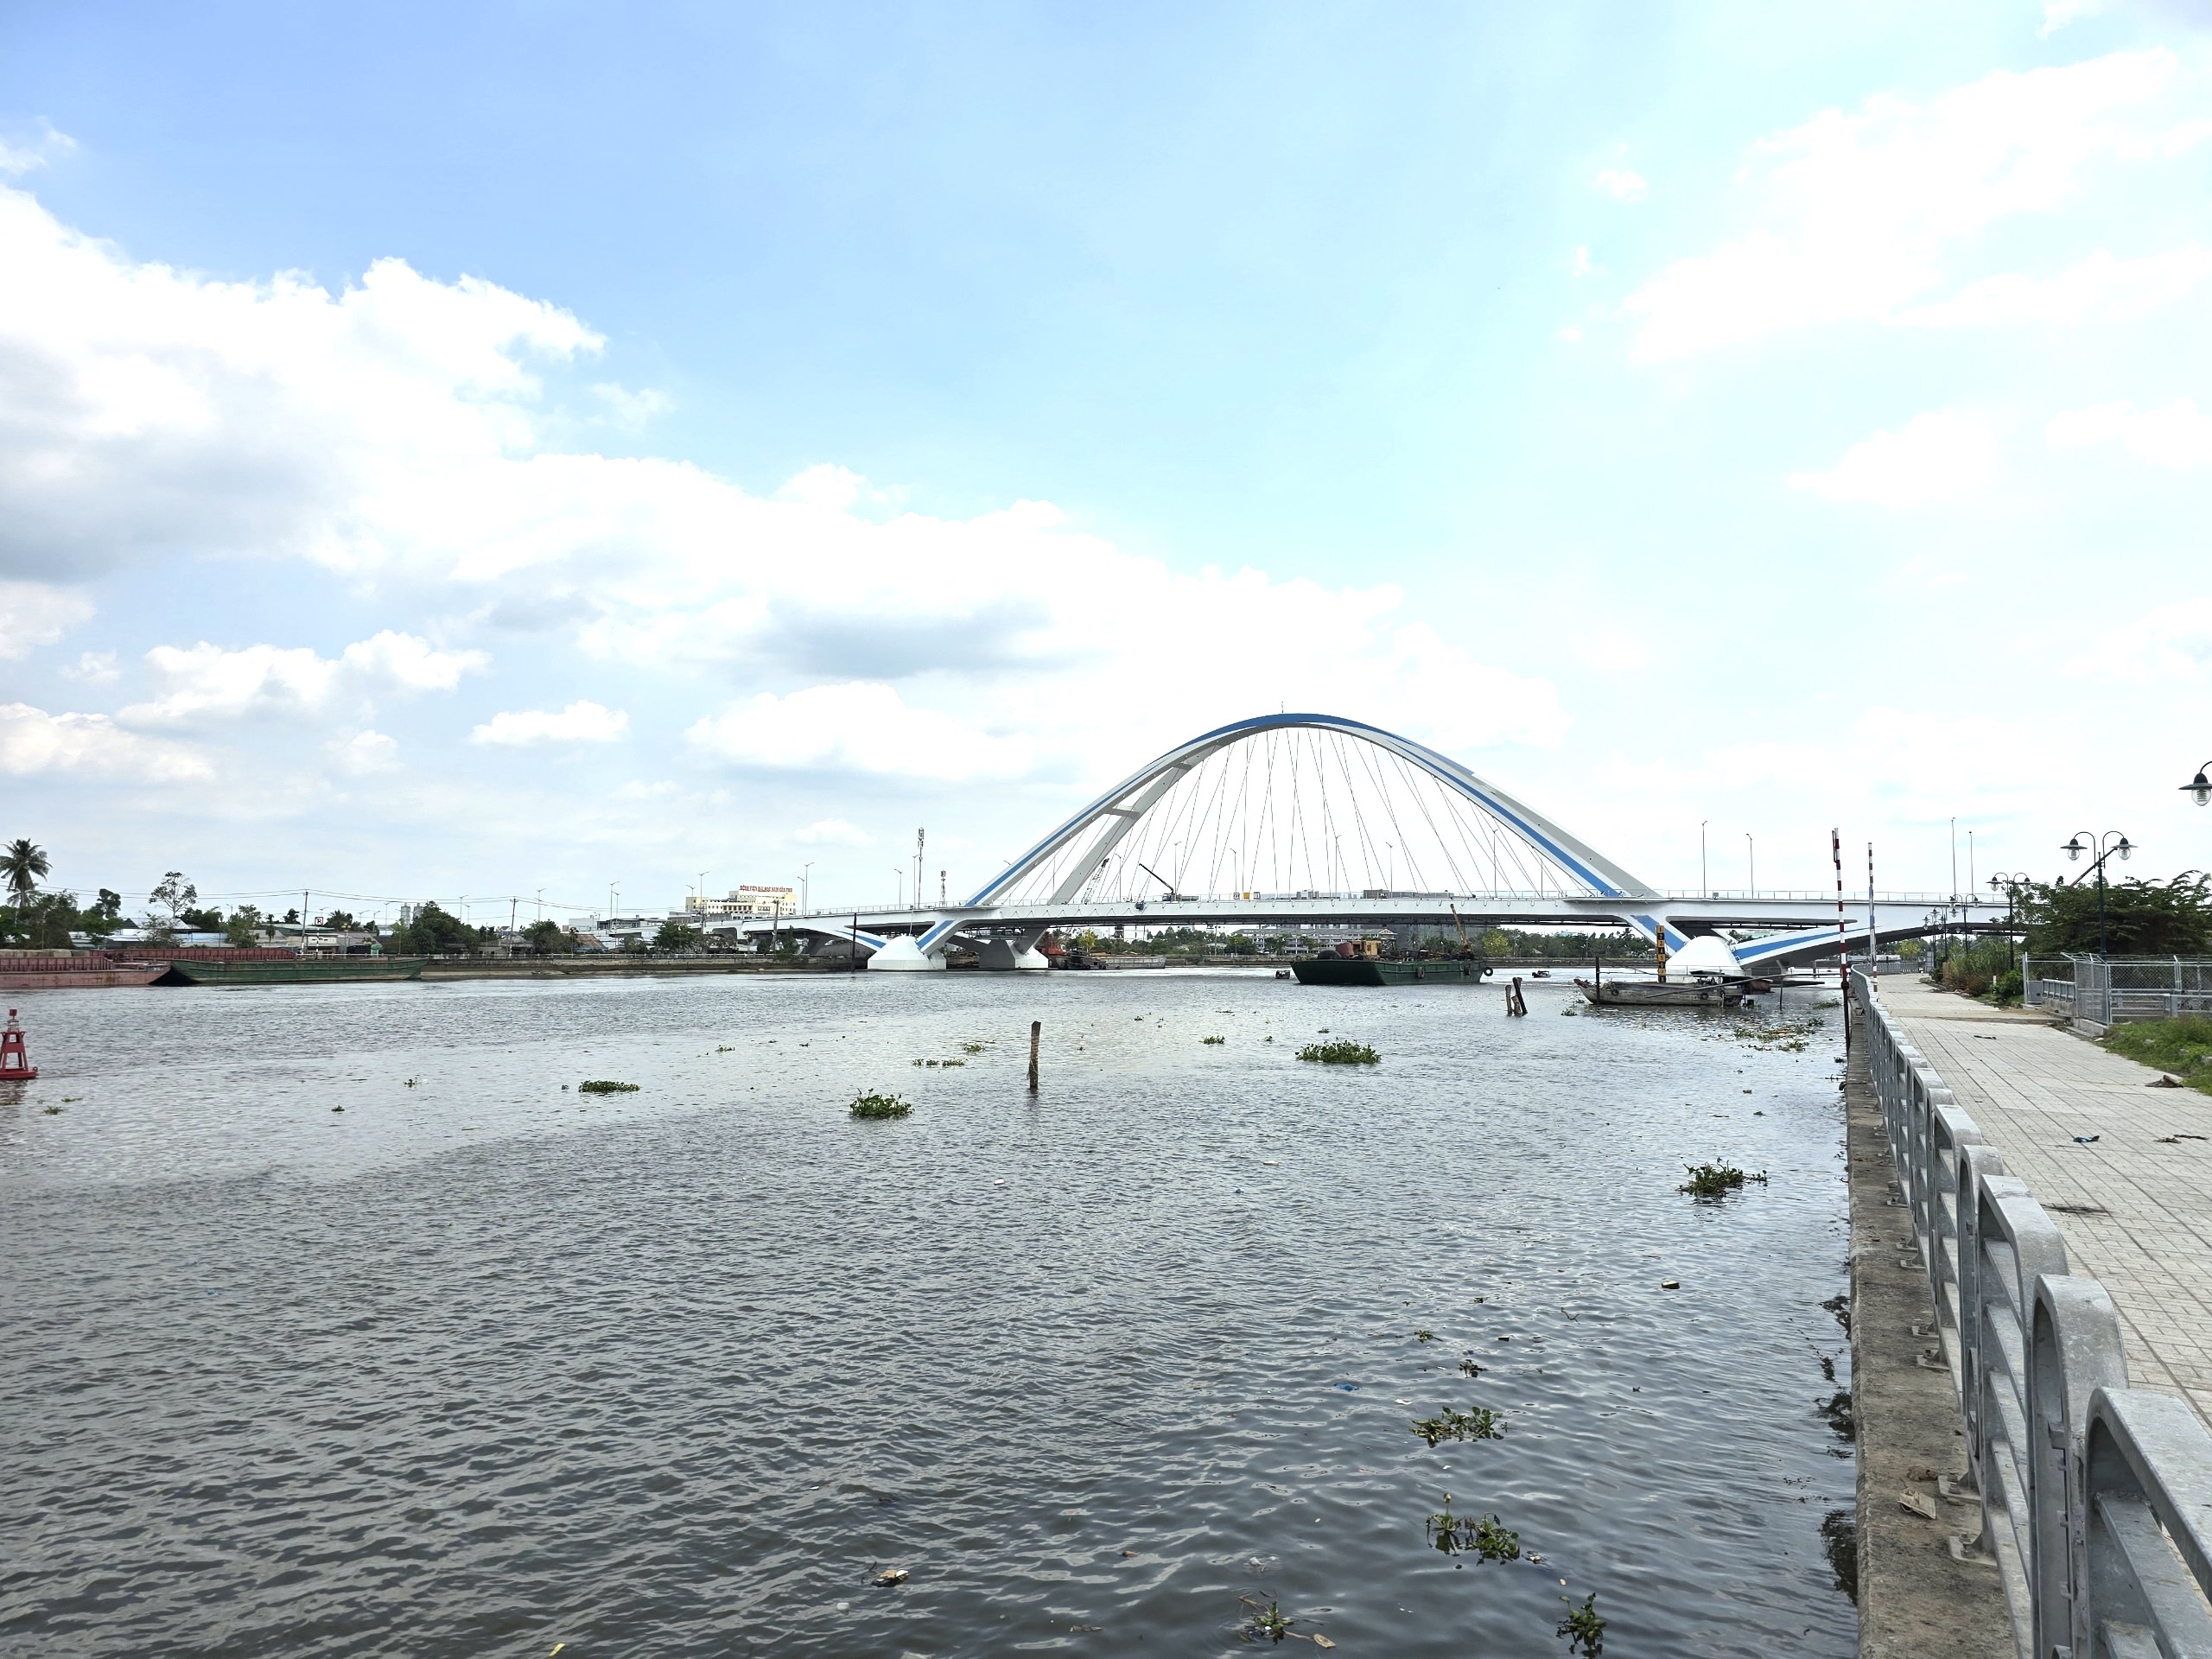 Cầu Trần Hoàng Na và cầu Tây Đô: Hai cây cầu bắc qua sông Cần Thơ khánh thành dịp lễ 30/4- Ảnh 1.